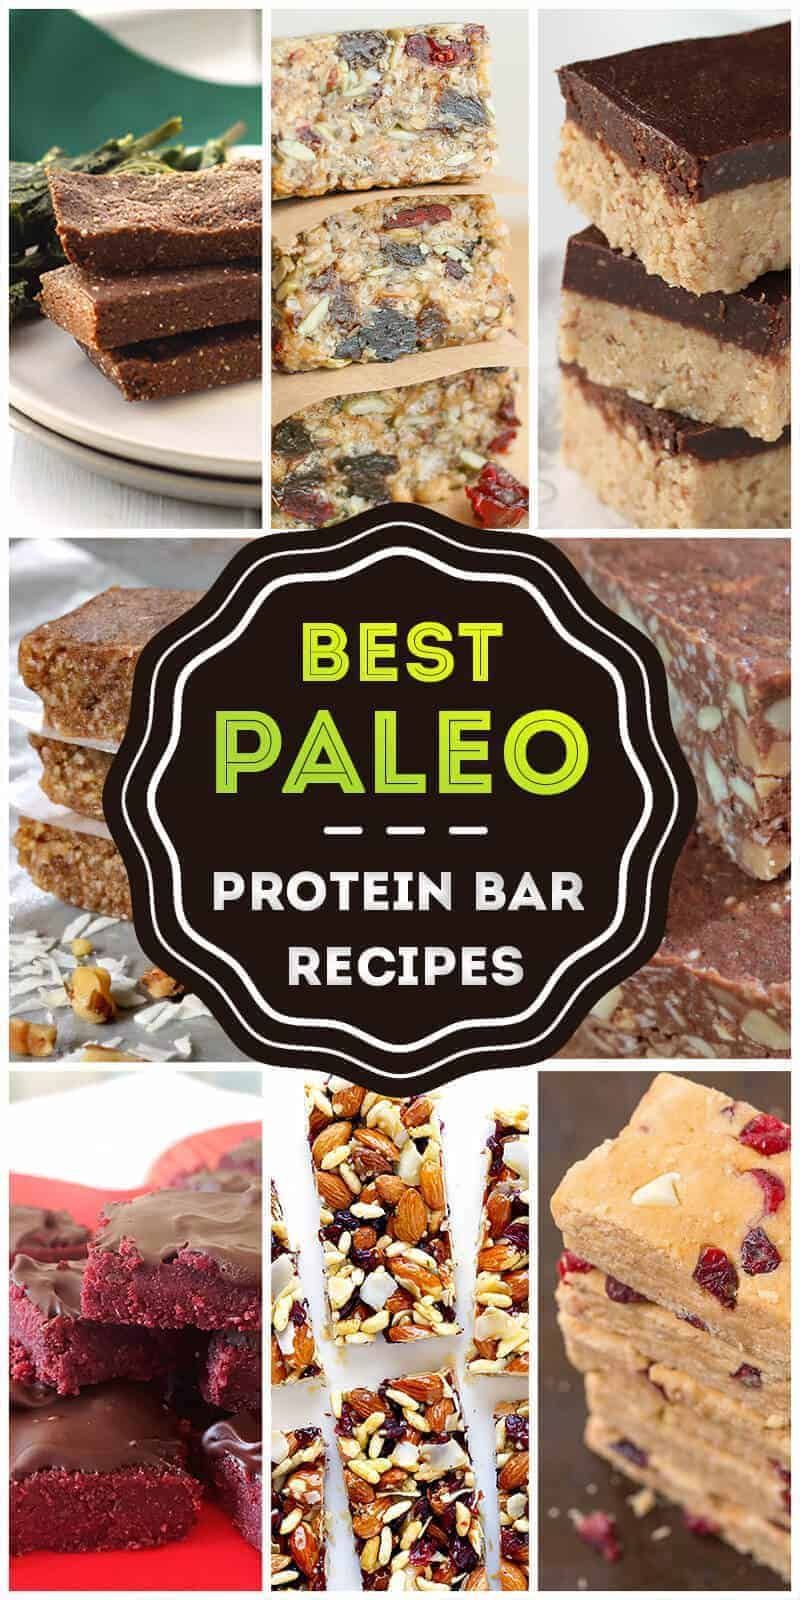 16 diet desserts protein bars
 ideas